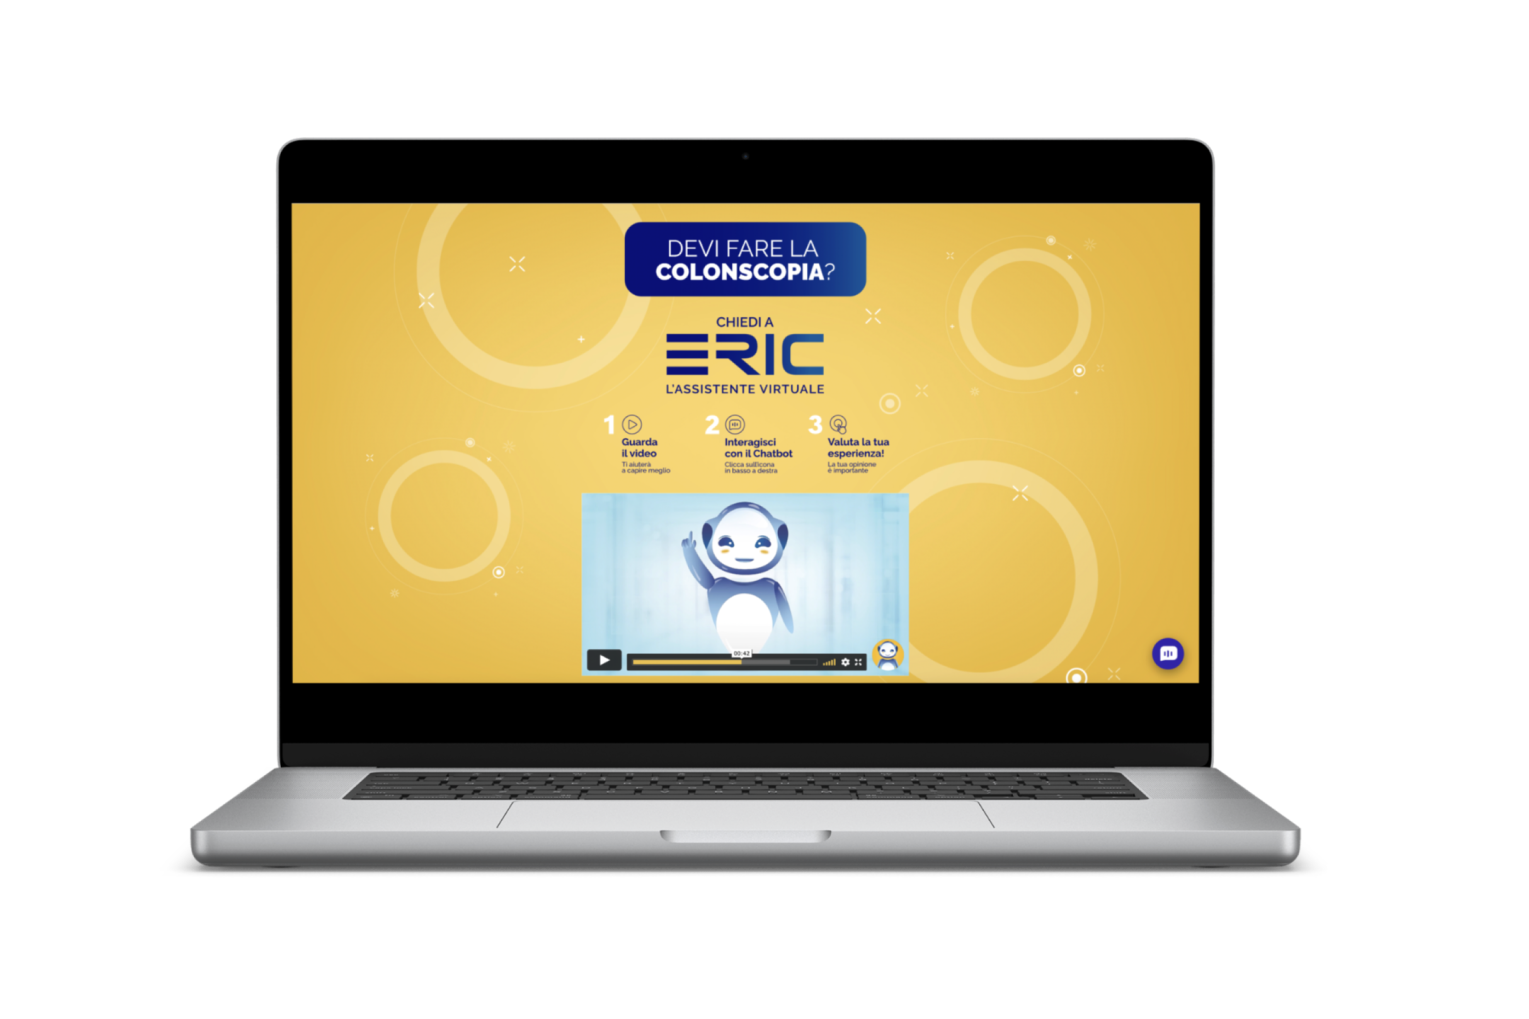 eric - conversational AI assistant